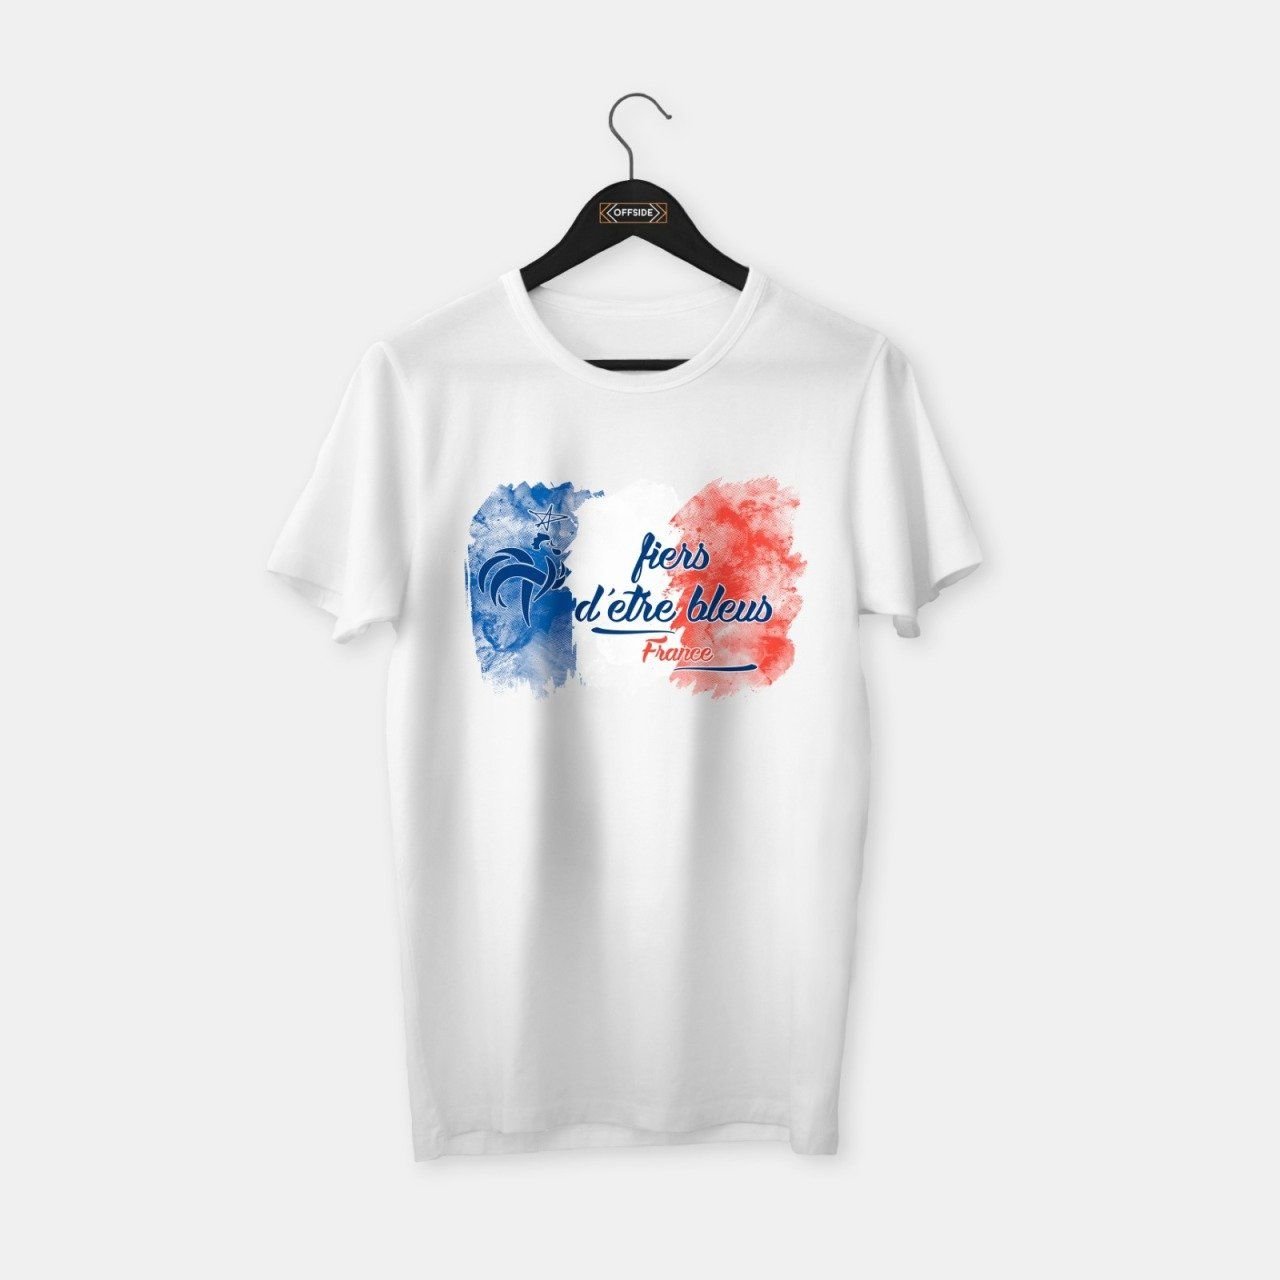 France (Fransa) T-shirt